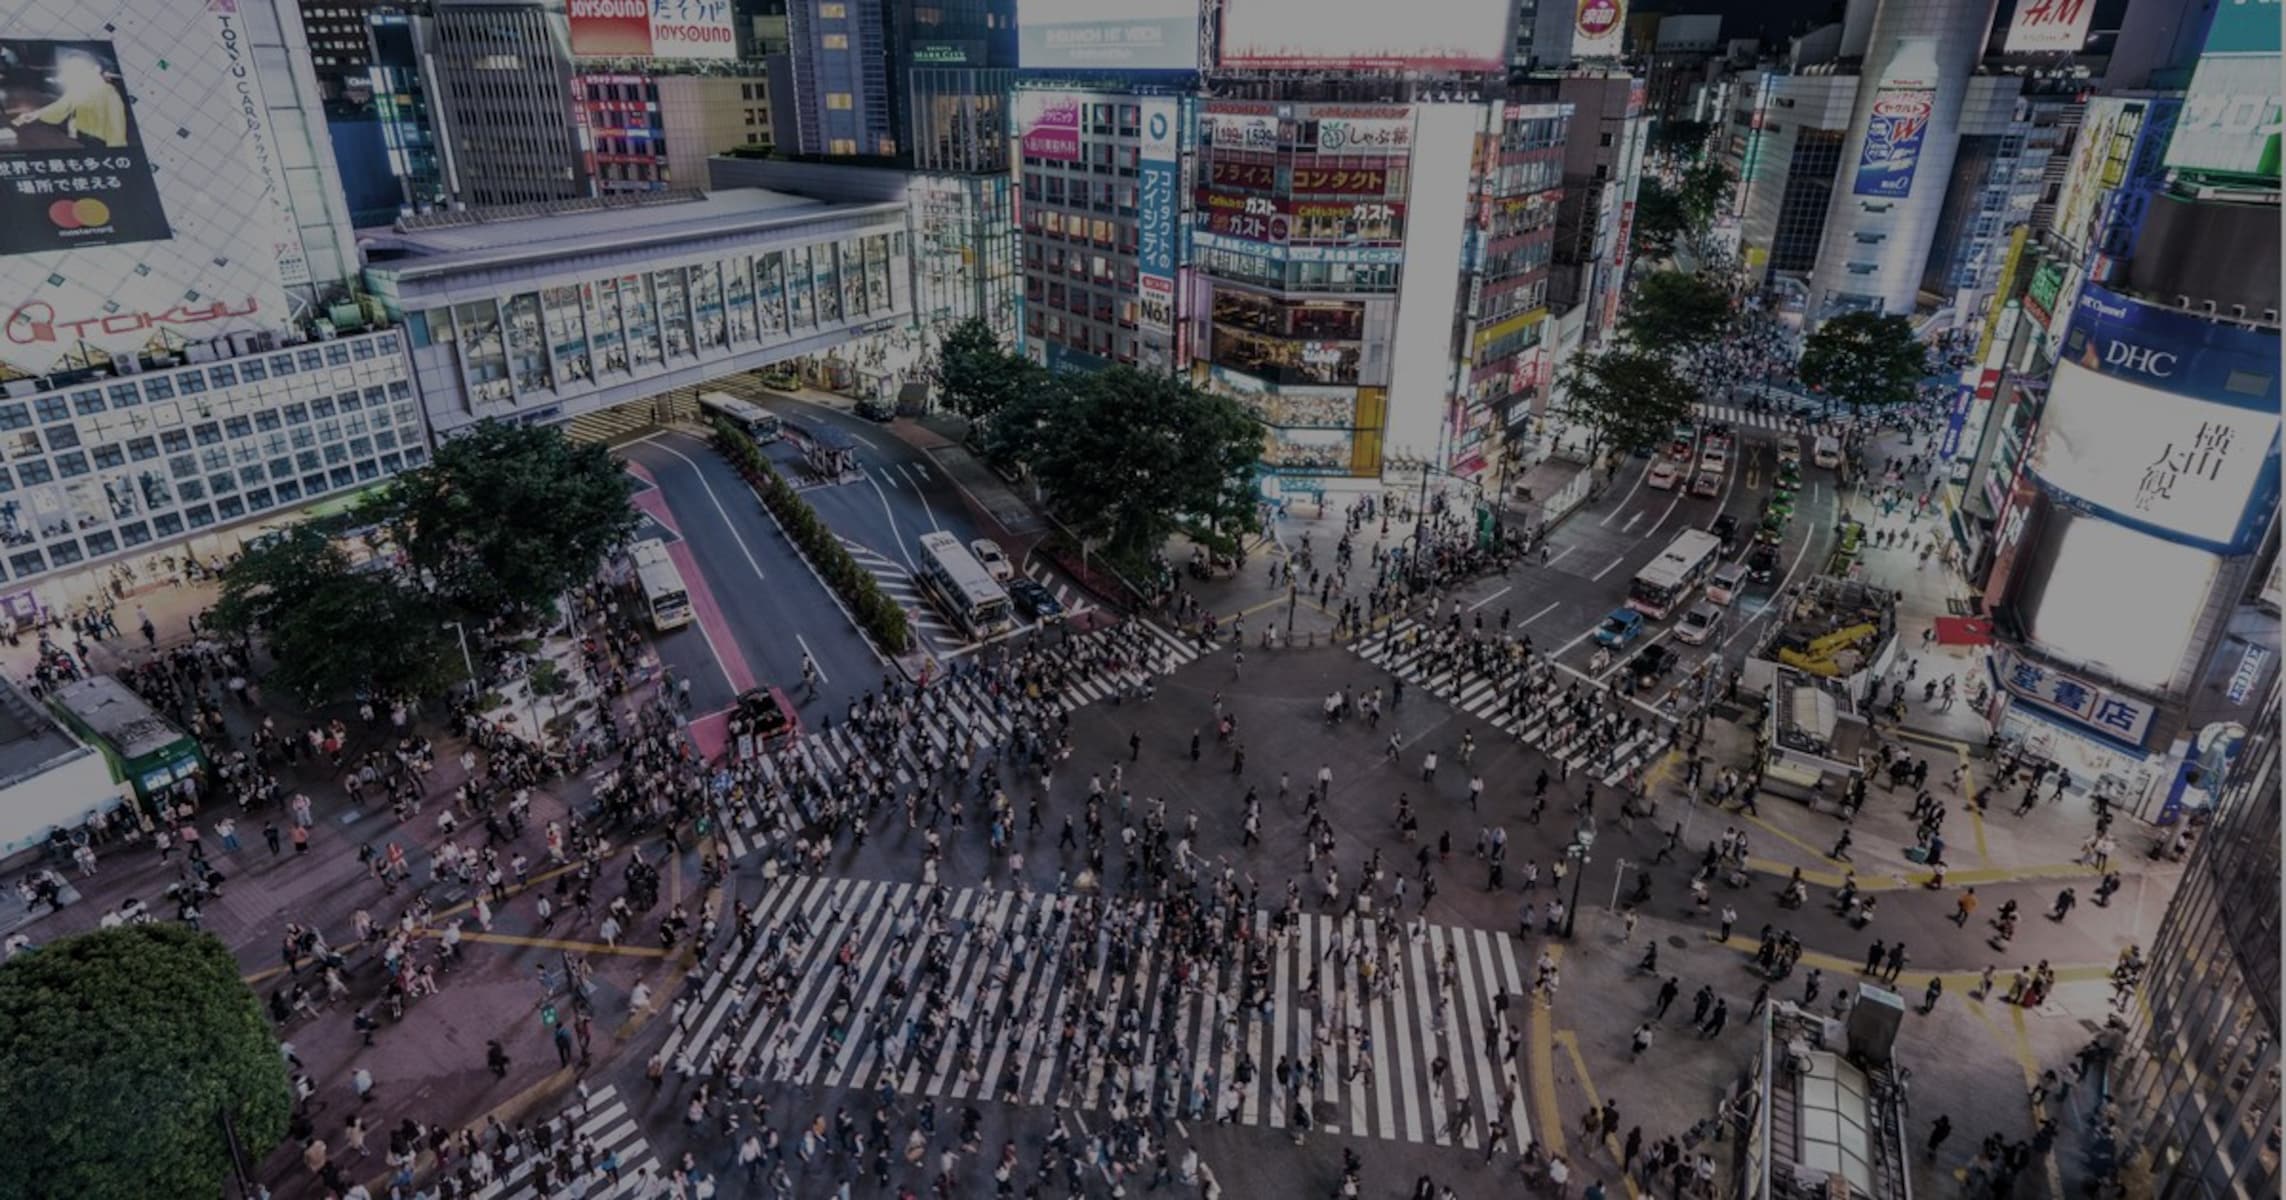 「ギャル」が消えてから、渋谷は「騒動の街」となった